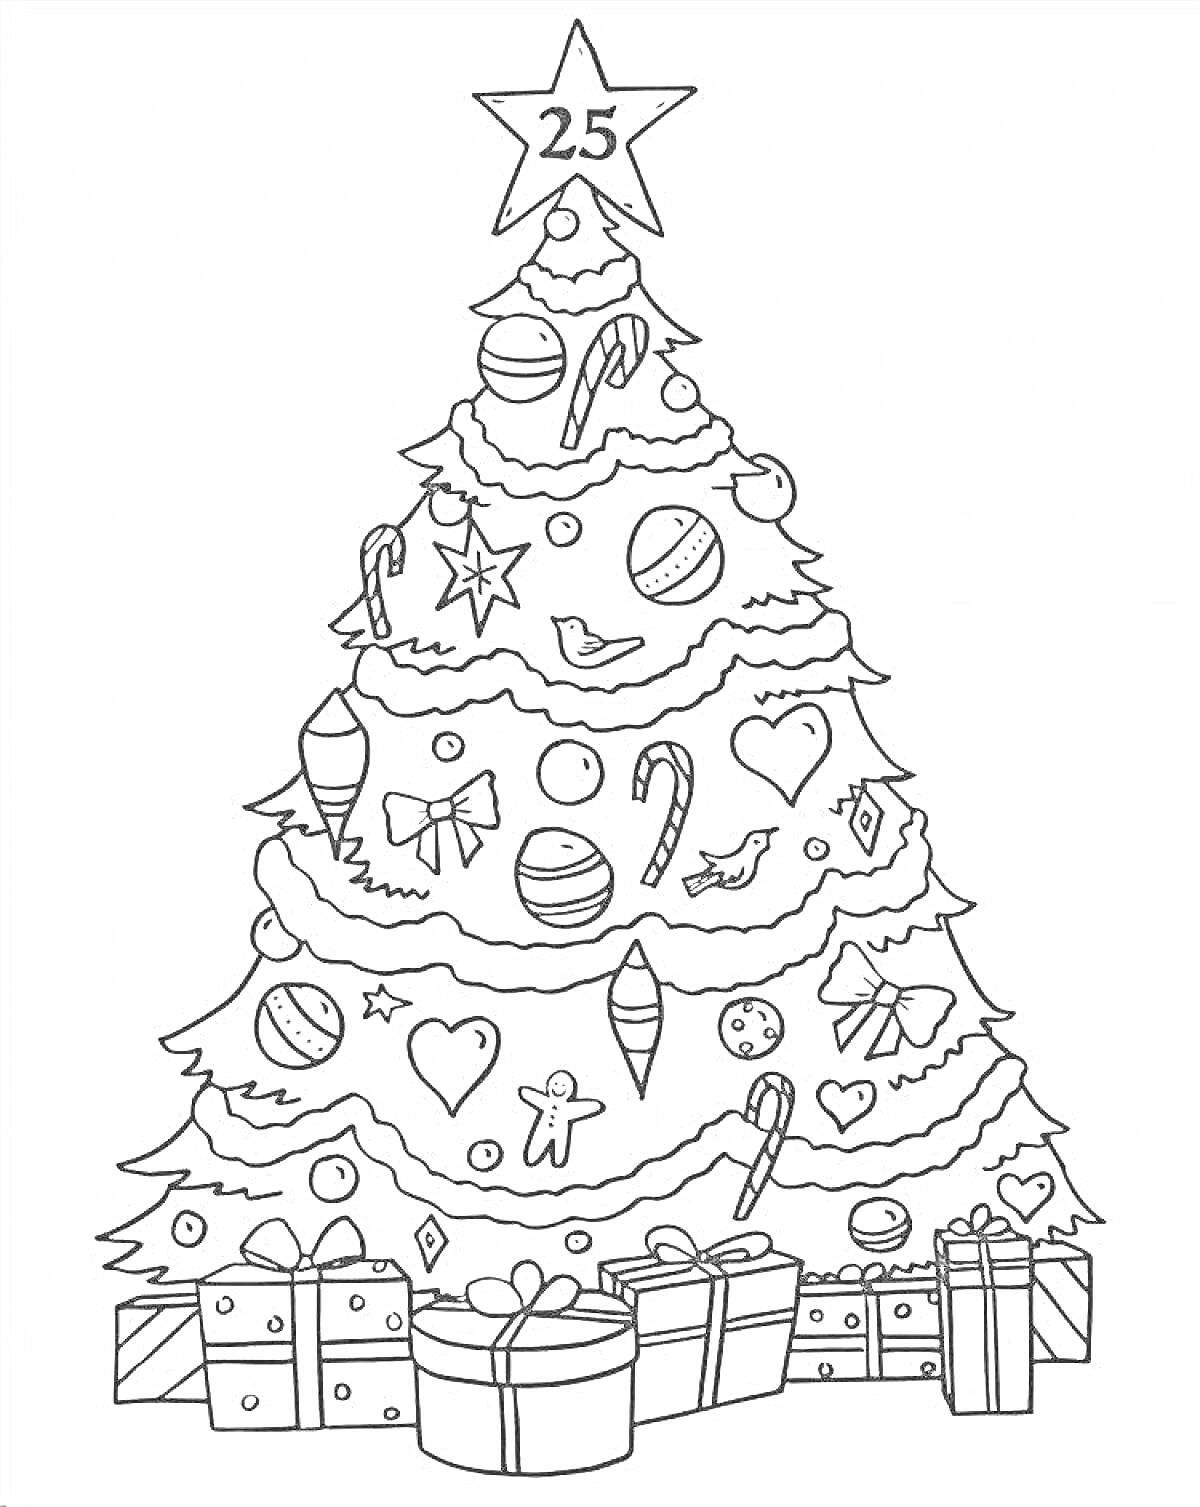 Раскраска Нарядная елка с подарками, украшенная шарами, сердечками, звездочками, конфетами, бантиками и пряничными человечками